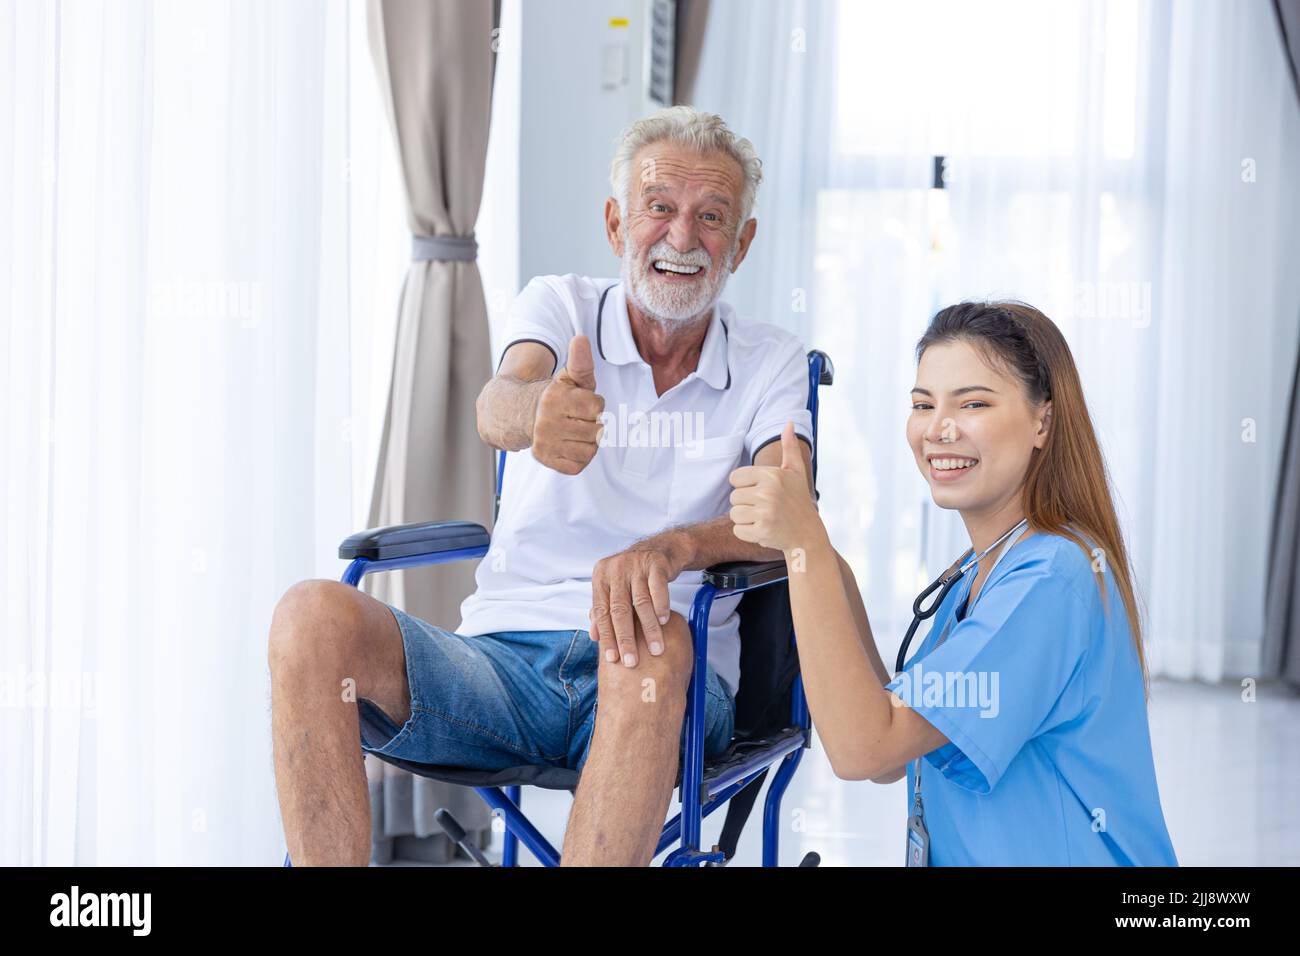 Retrato Enfermera Personal Médico Servicio de Apoyo Senior Ancianos Hombre Saludable en Rueda Silla pulgares up sonrisa feliz. Foto de stock